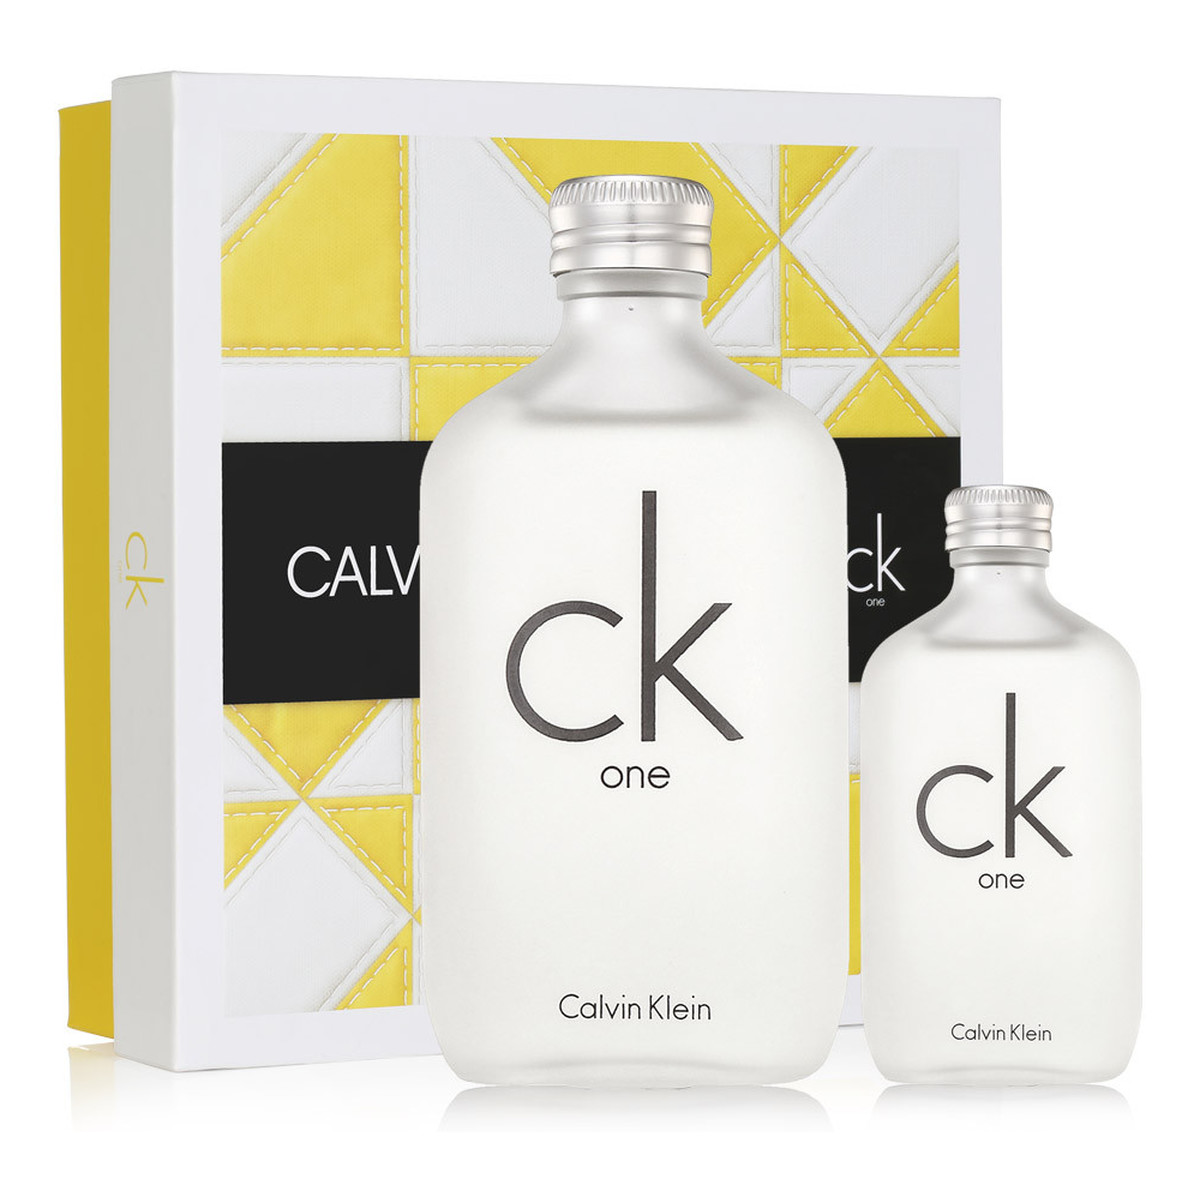 Calvin Klein CK One zestaw woda toaletowa spray 200ml + woda toaletowa spray 50ml